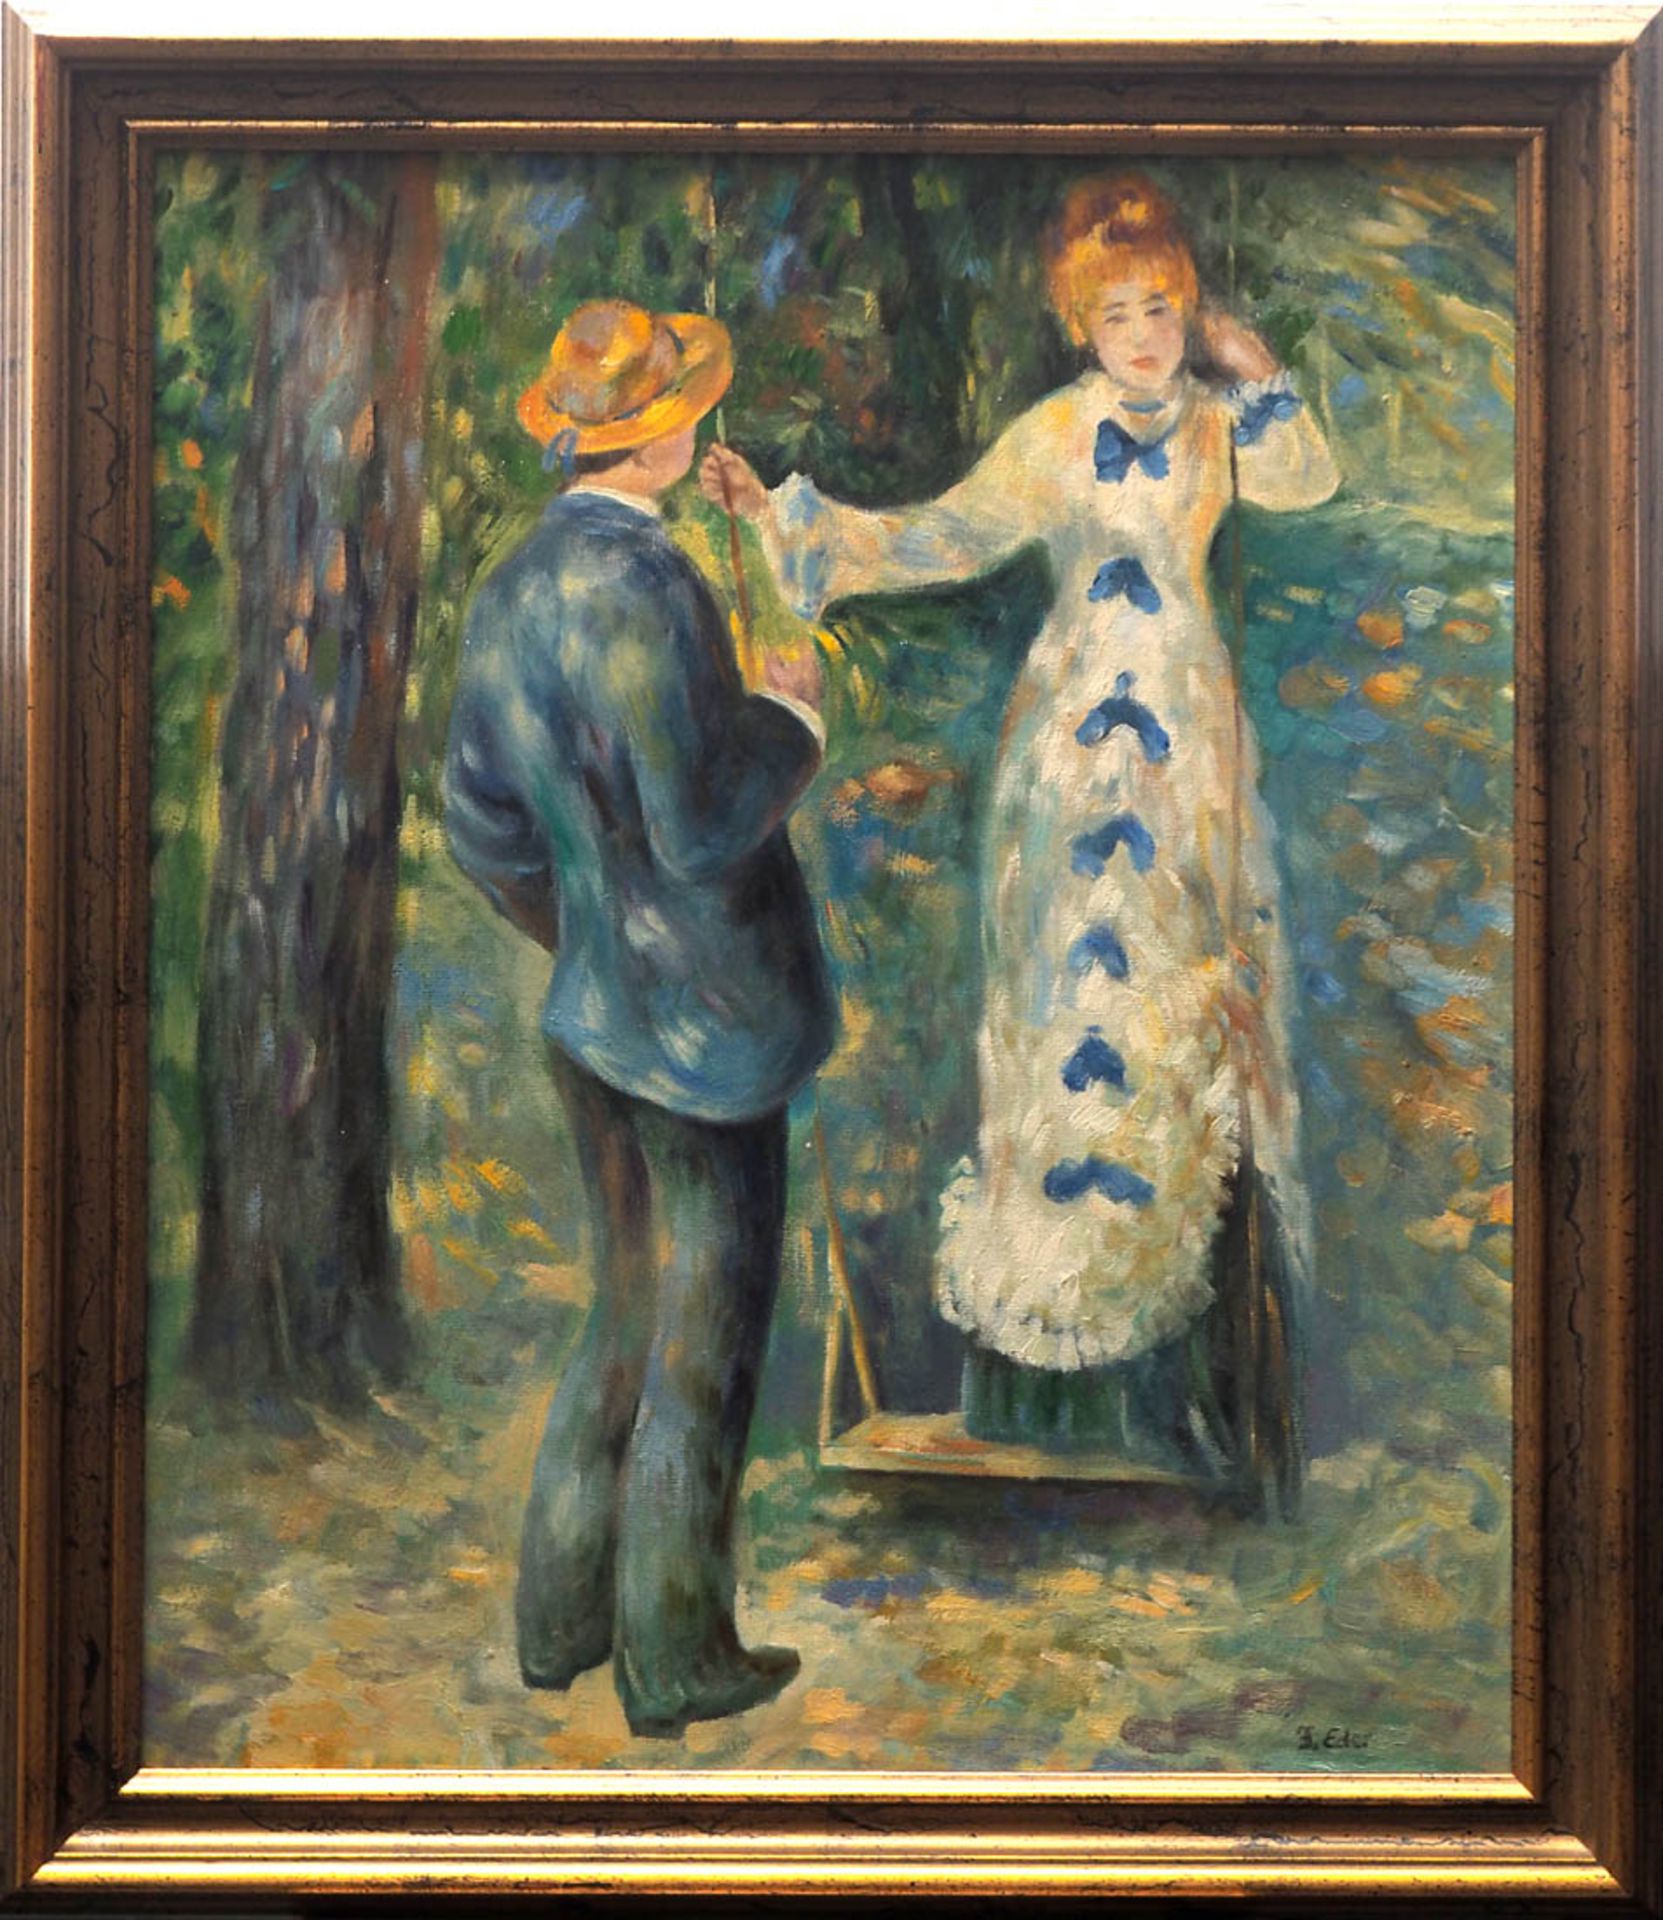 Renoir, Auguste (Kopie nach) Das Mädchen auf der Schaukel. Öl/Lwd., ger. Bildgröße 60x49cm.